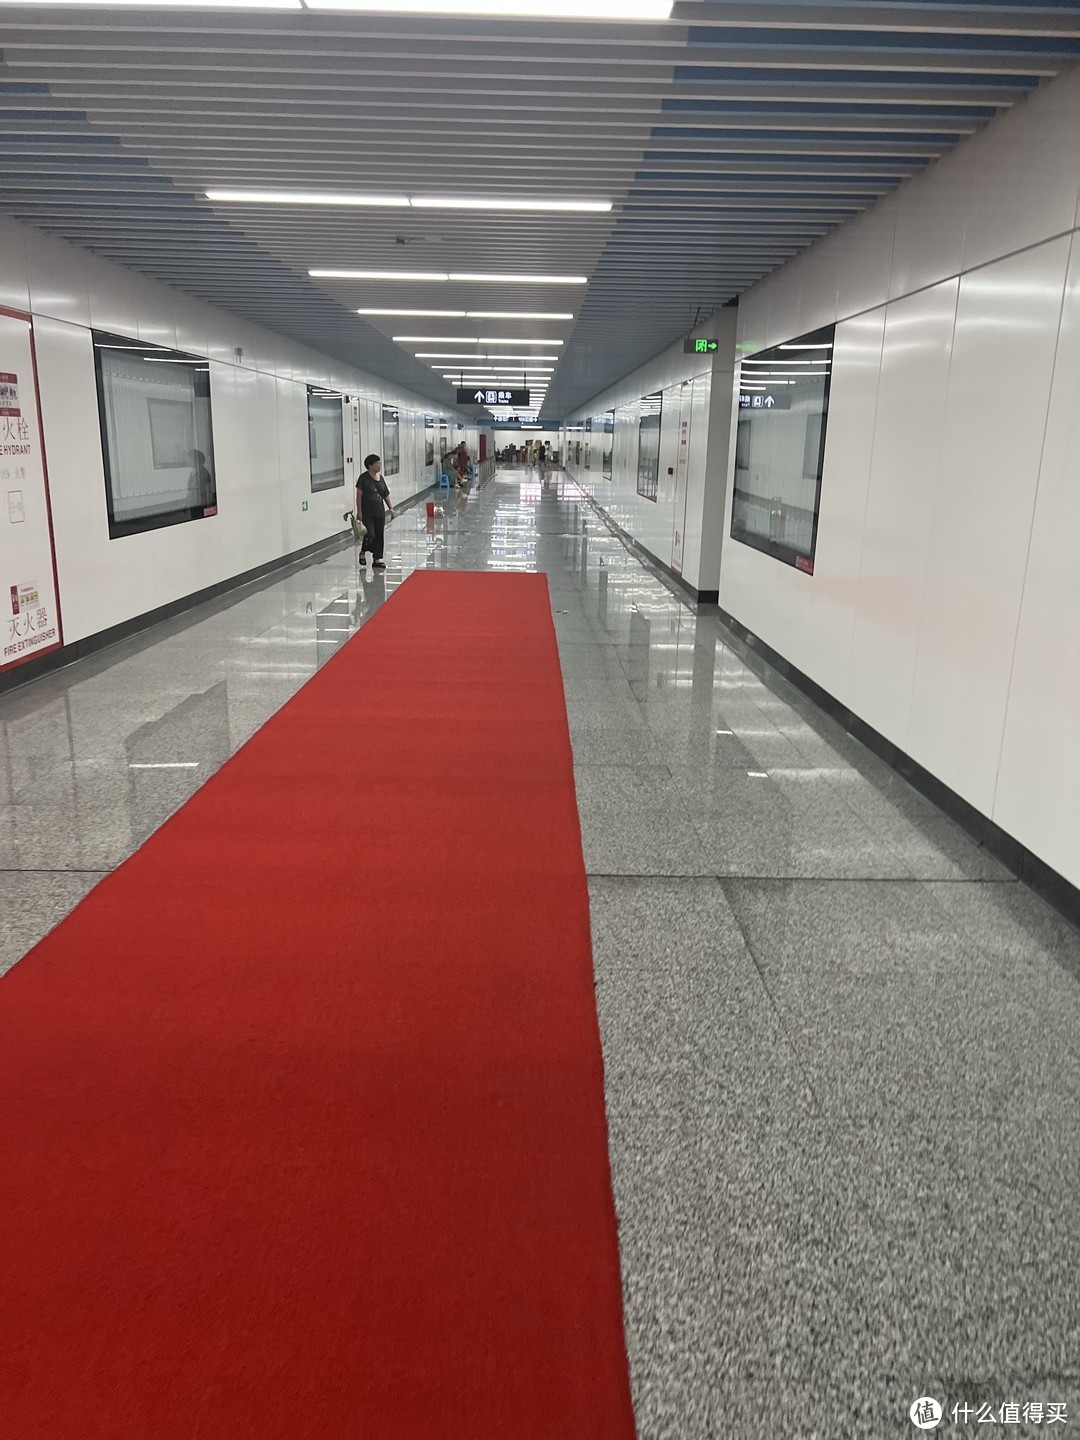 地铁的入站口修的很长，长长的红地毯